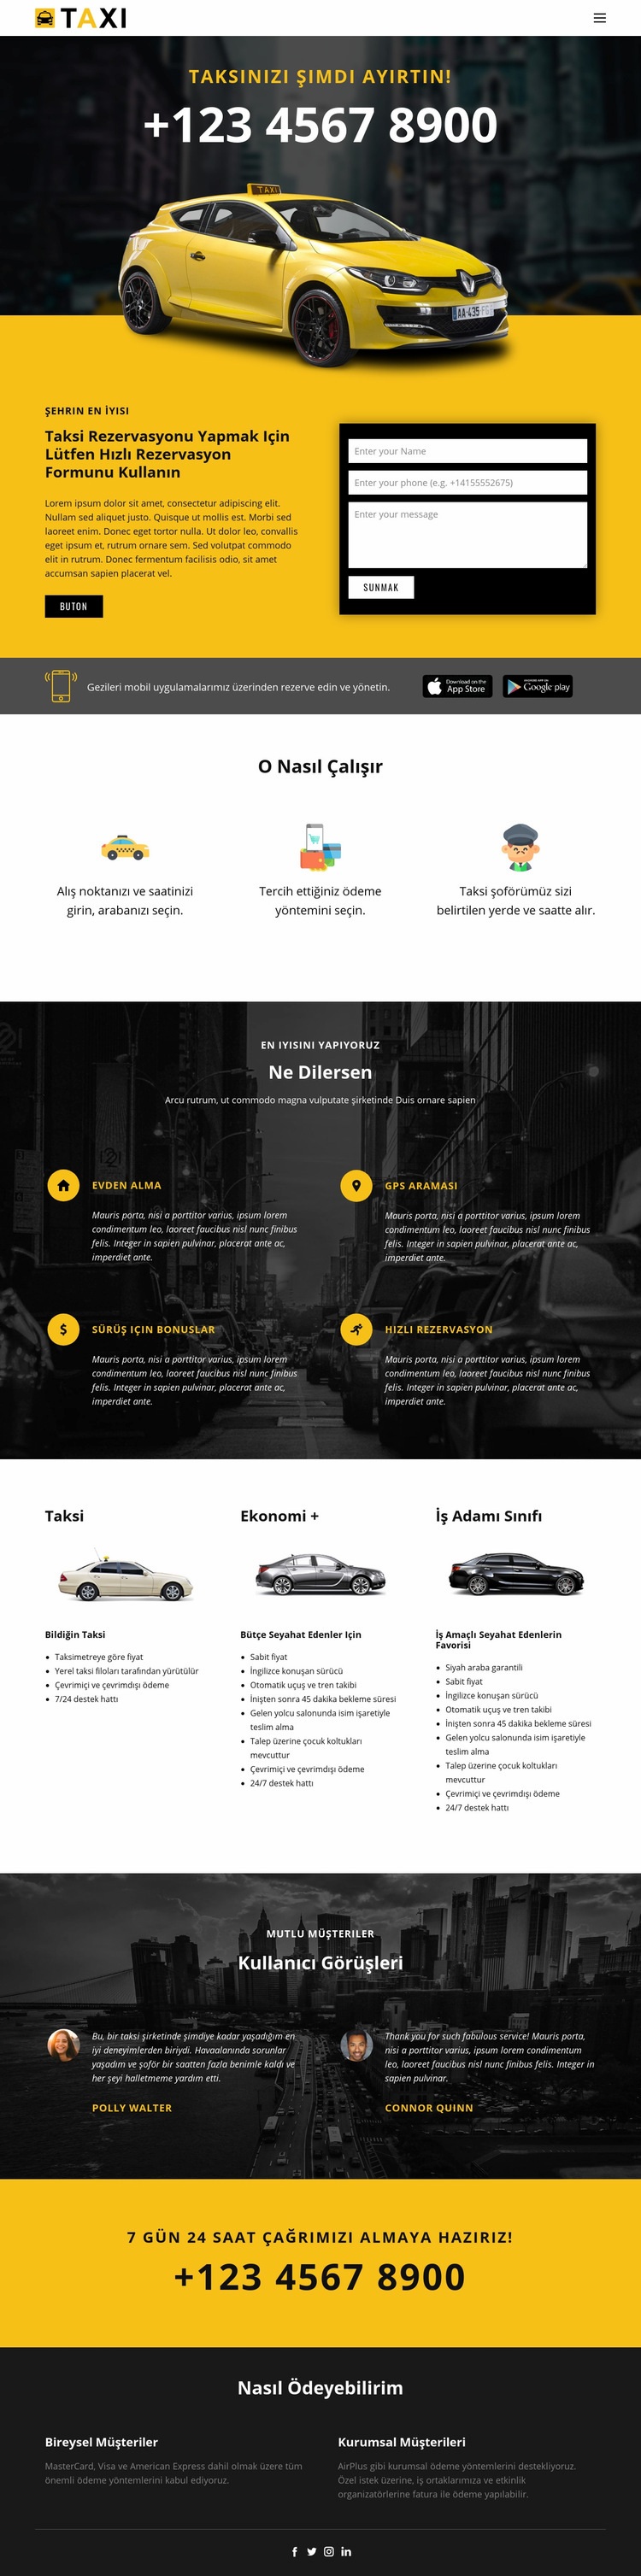 En hızlı taksi arabaları Açılış sayfası